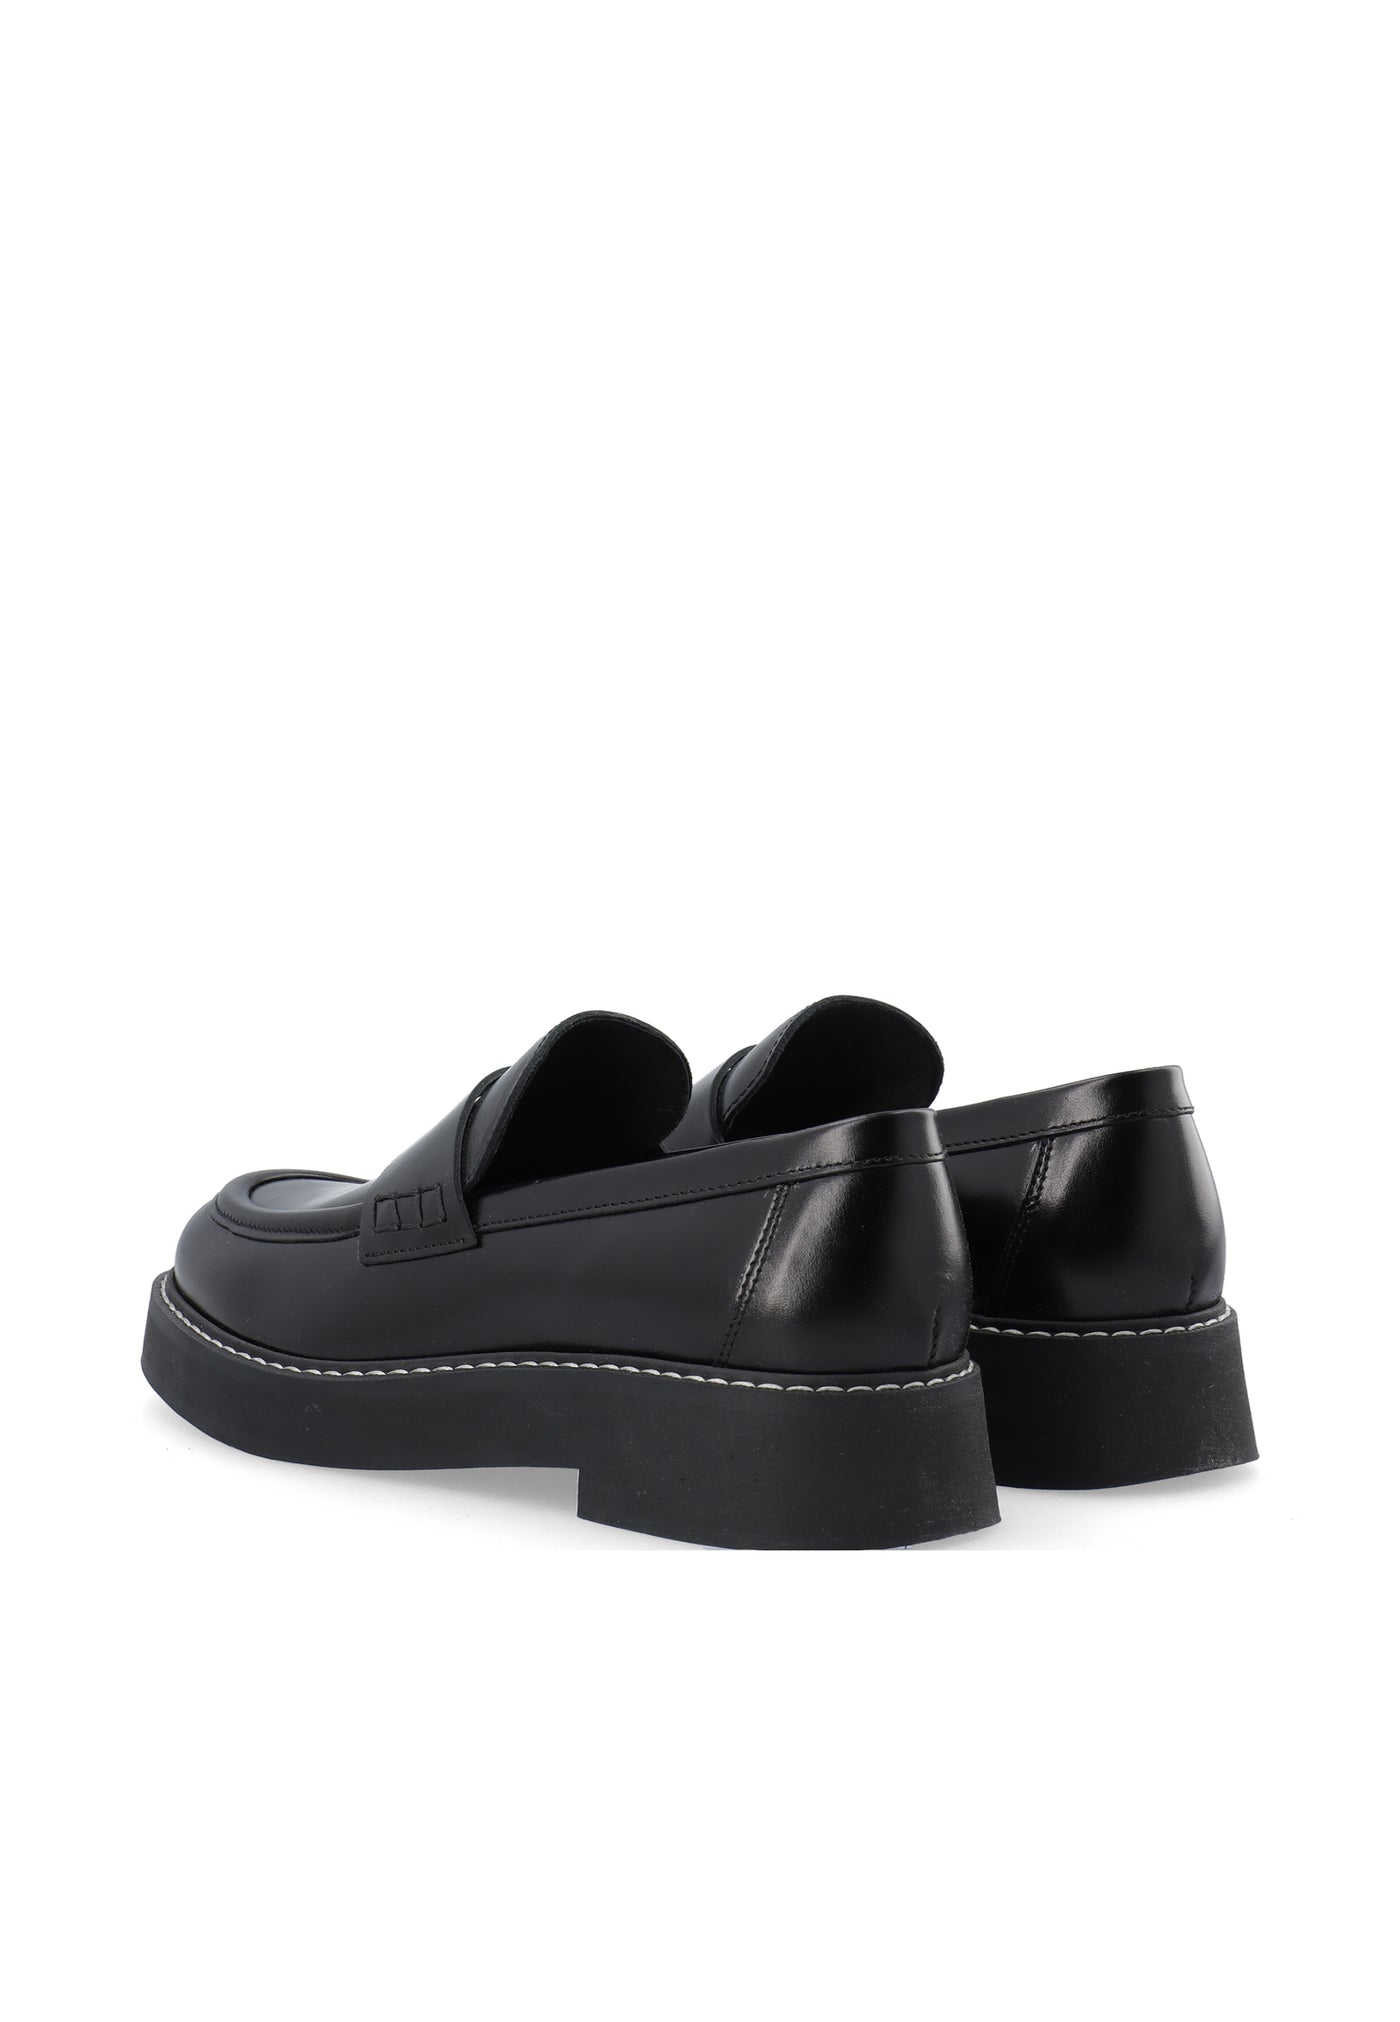 LÄST Milla - Leather - Black Loafers Black